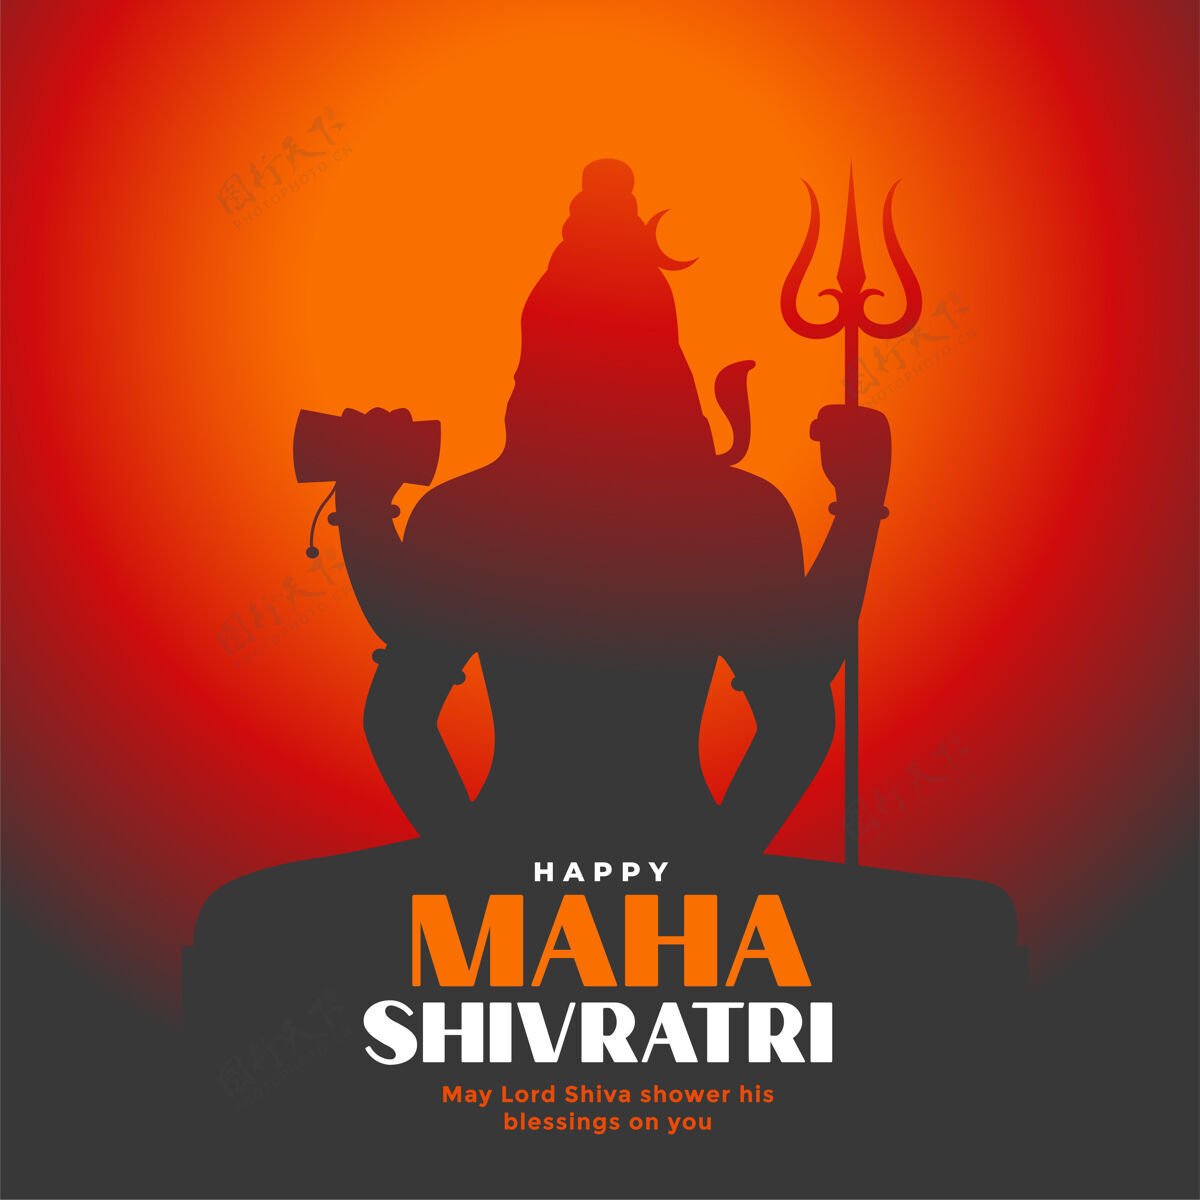 印度教主希夫香卡剪影背景为马哈希夫拉特里主神节日